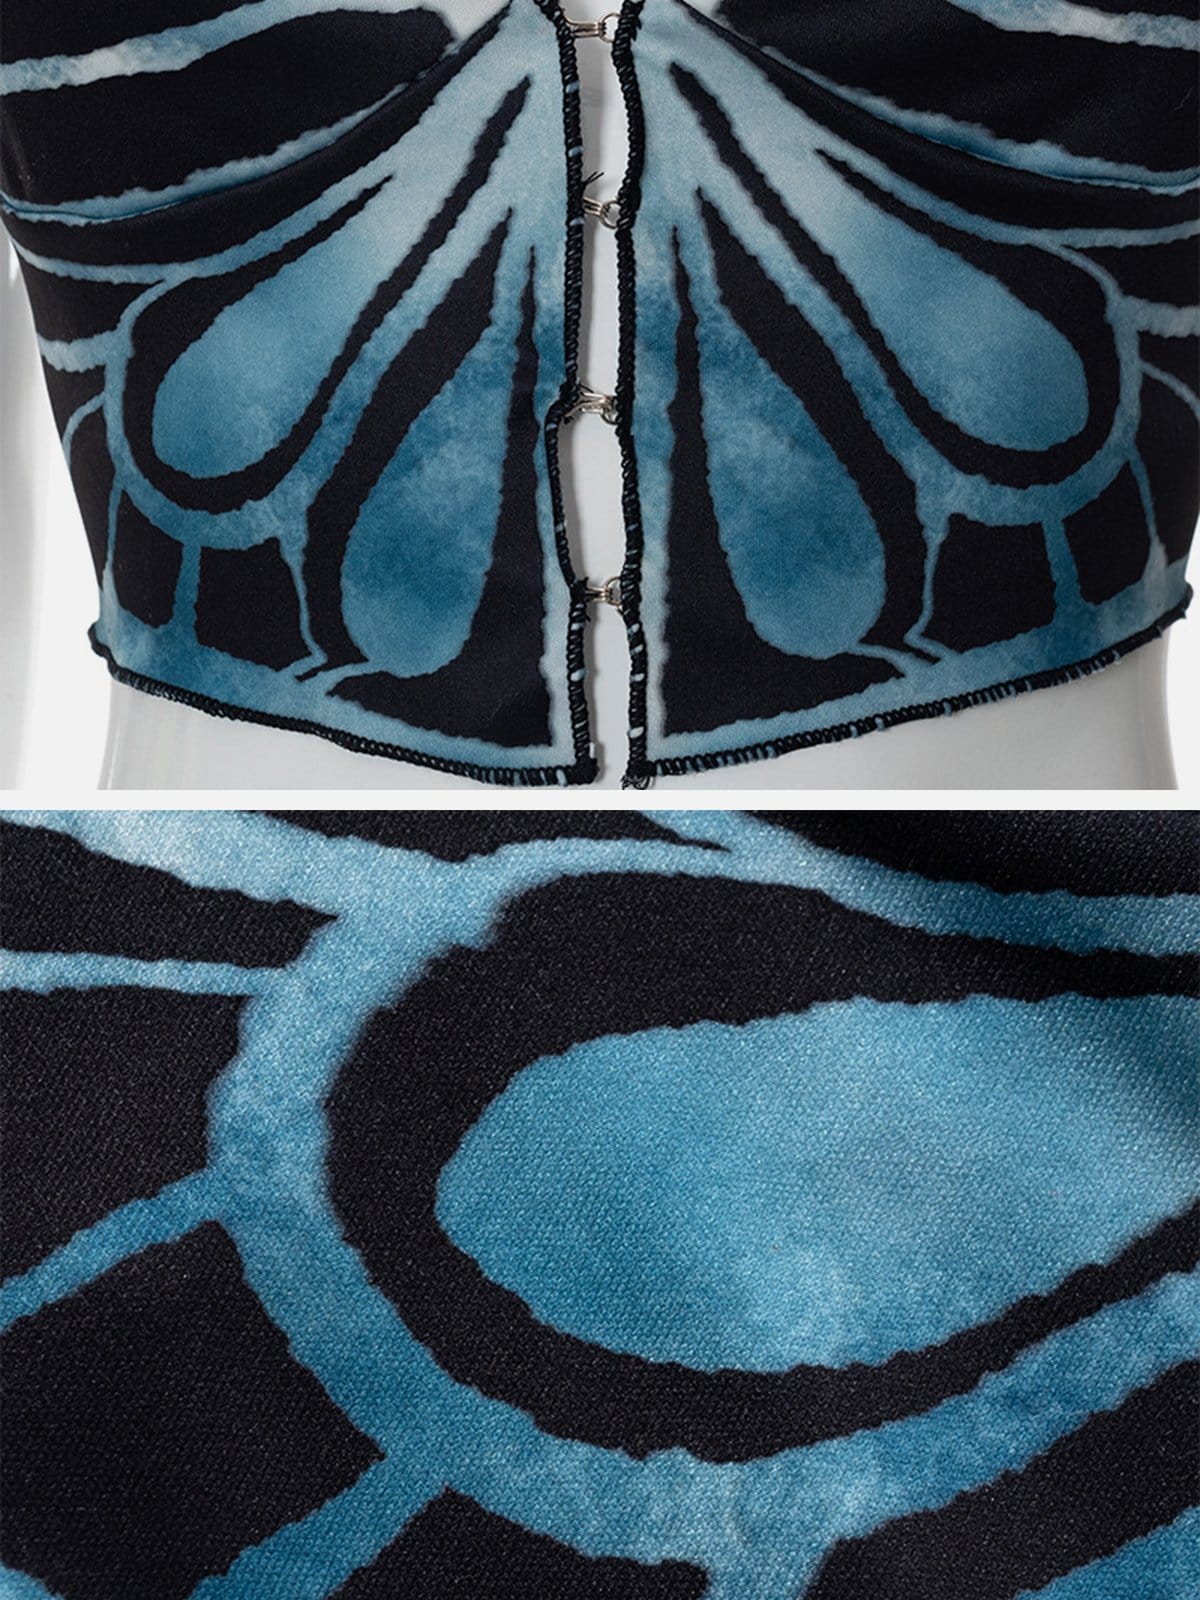 Butterfly Print Vest Streetwear Brand Techwear Combat Tactical YUGEN THEORY